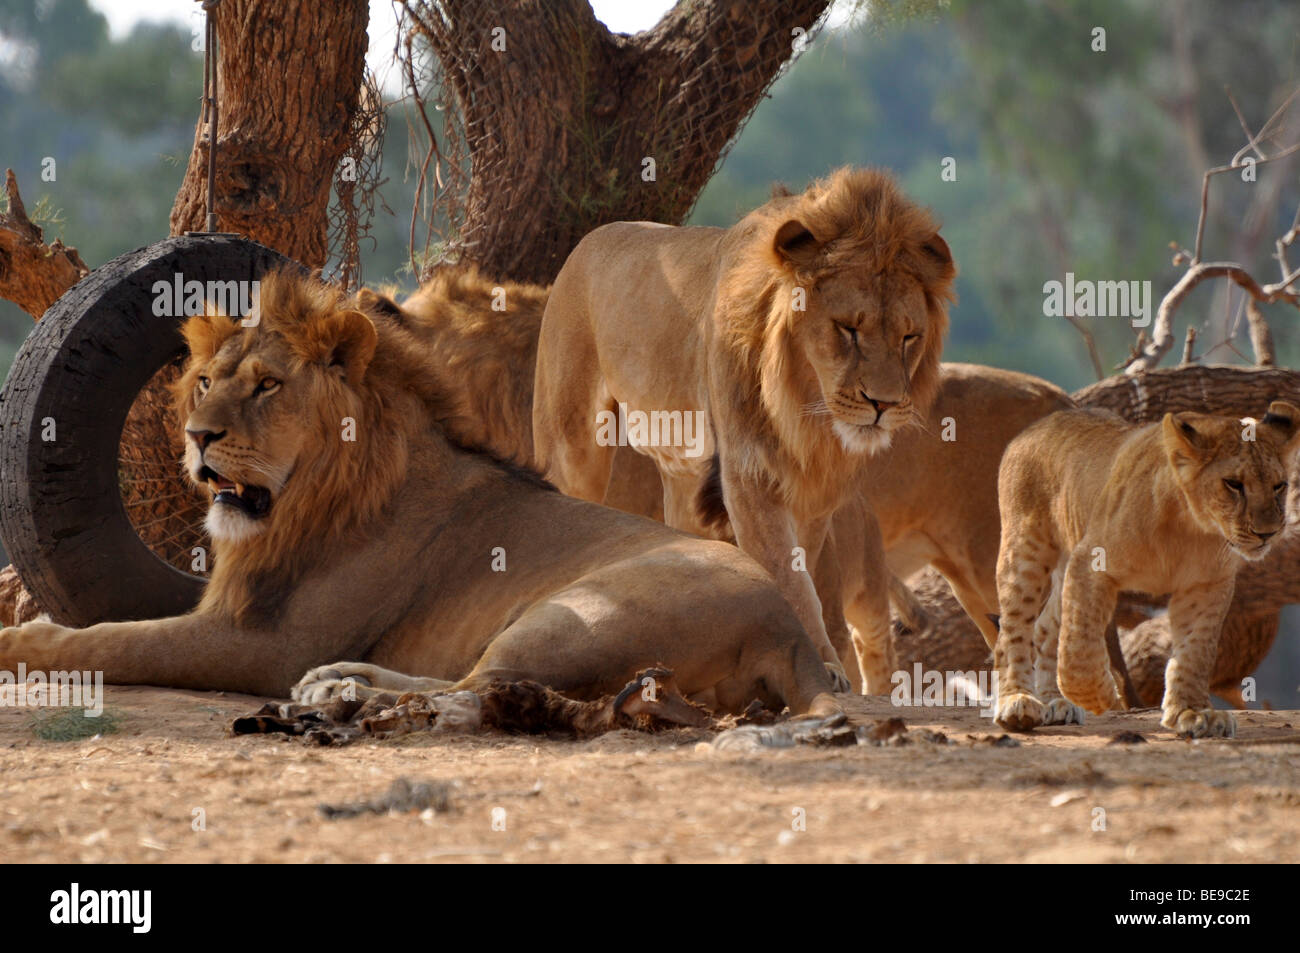 Una manada de leones en cautiverio Foto de stock